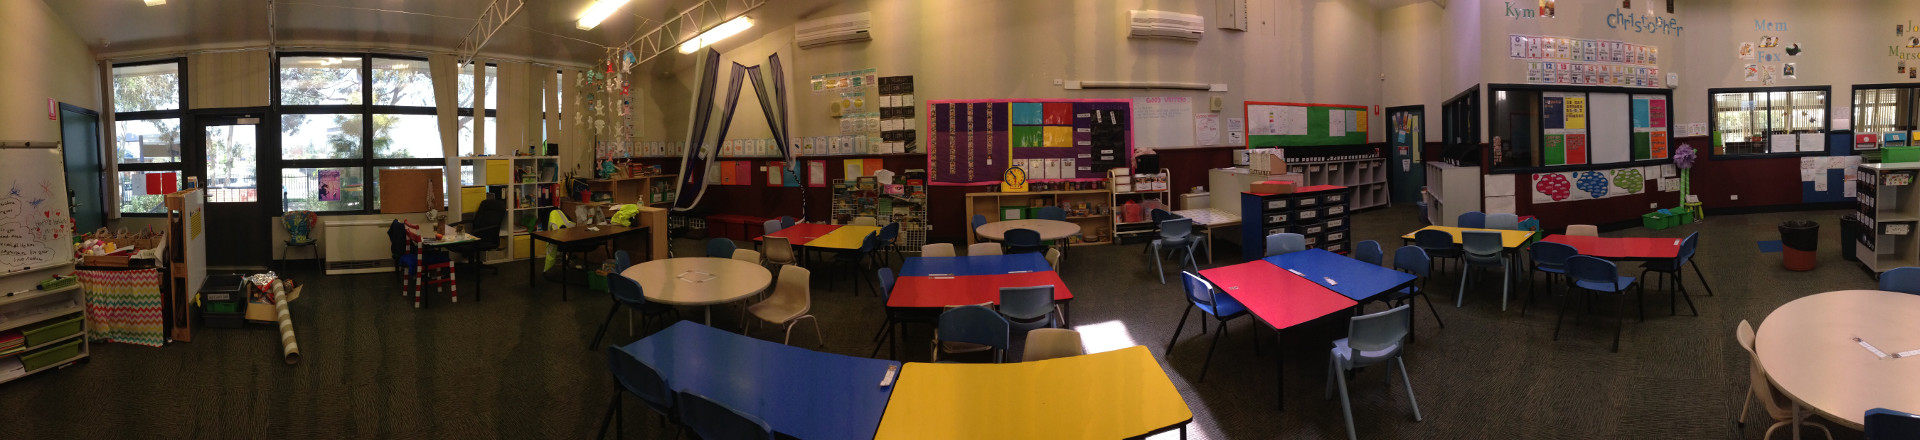 Image of junior classrooms